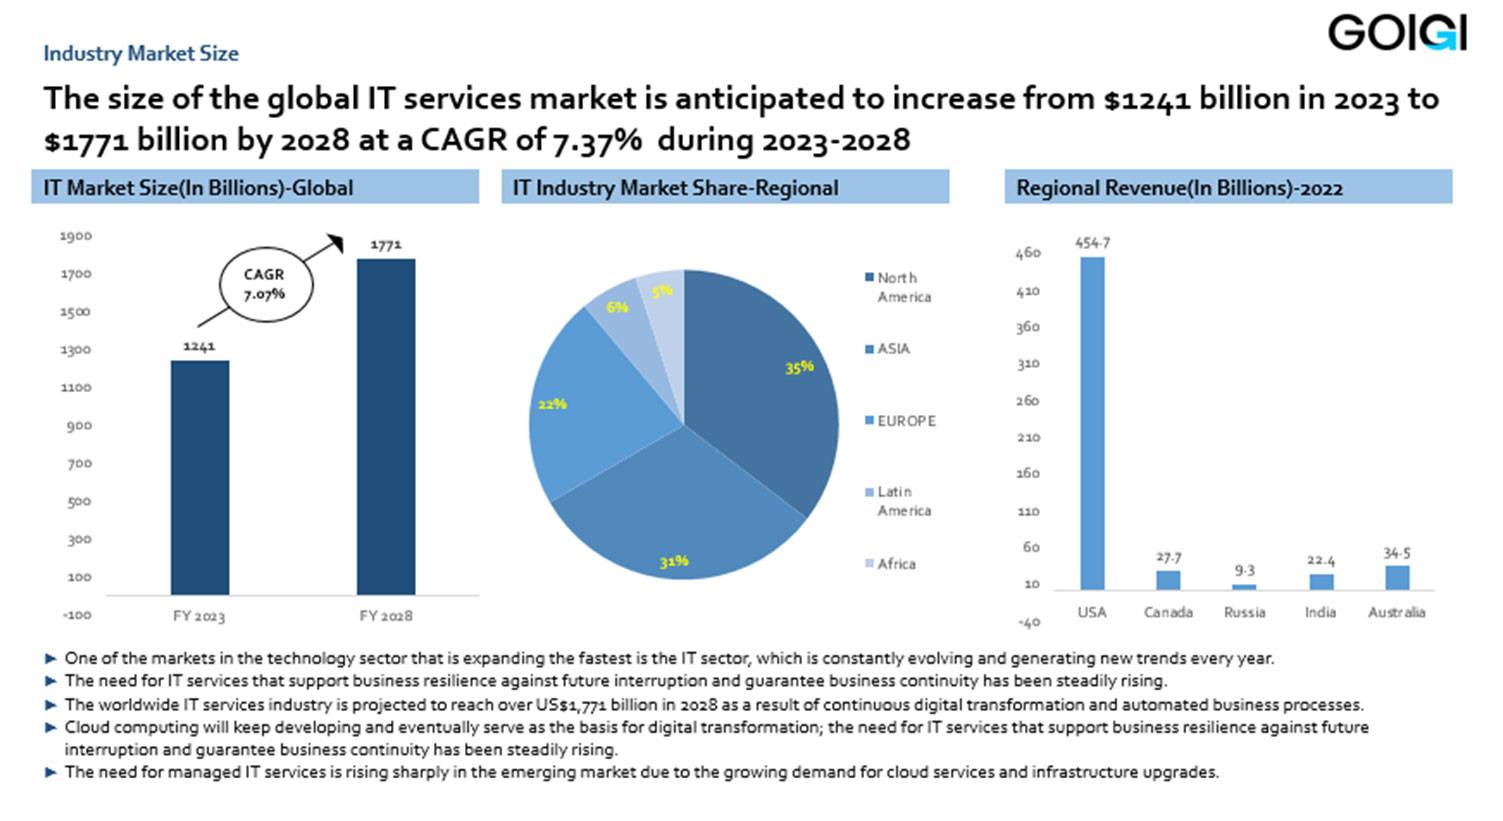 Global IT industry market size